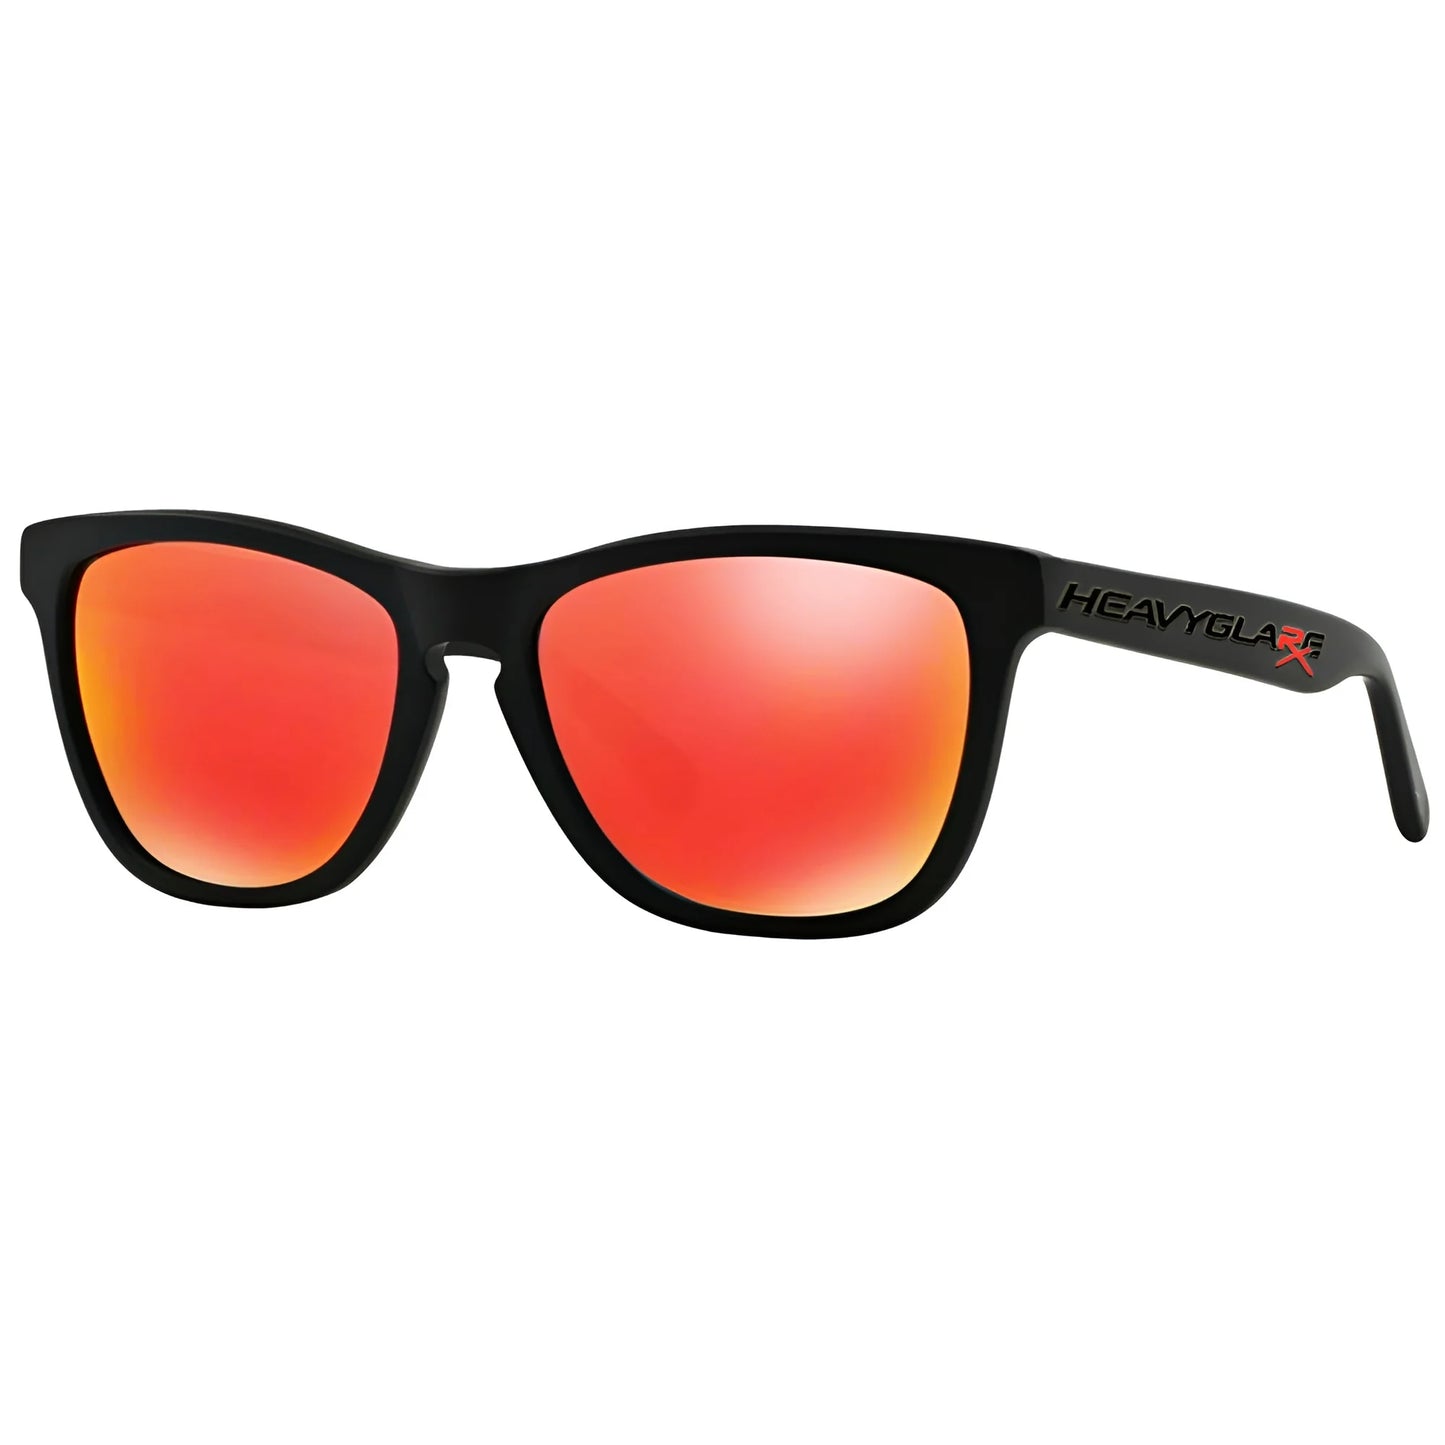 Rx Sunglasses Frame